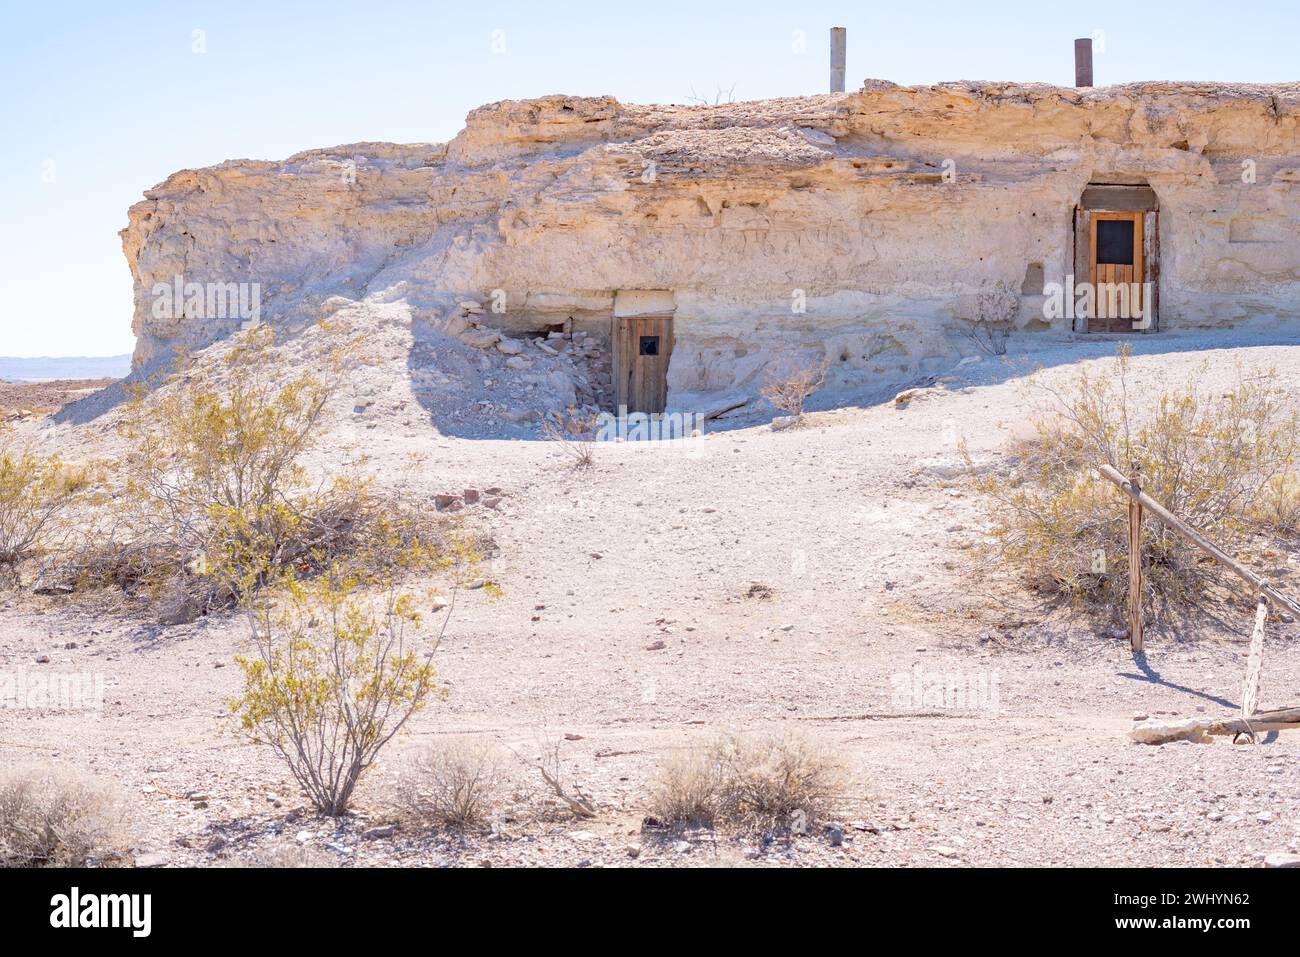 Early American, Cave Dwellings, Miners, Shoshone, Kalifornien, Death Valley Natl Park, Historisch, Architektur, Wüste, Gehöfte Stockfoto